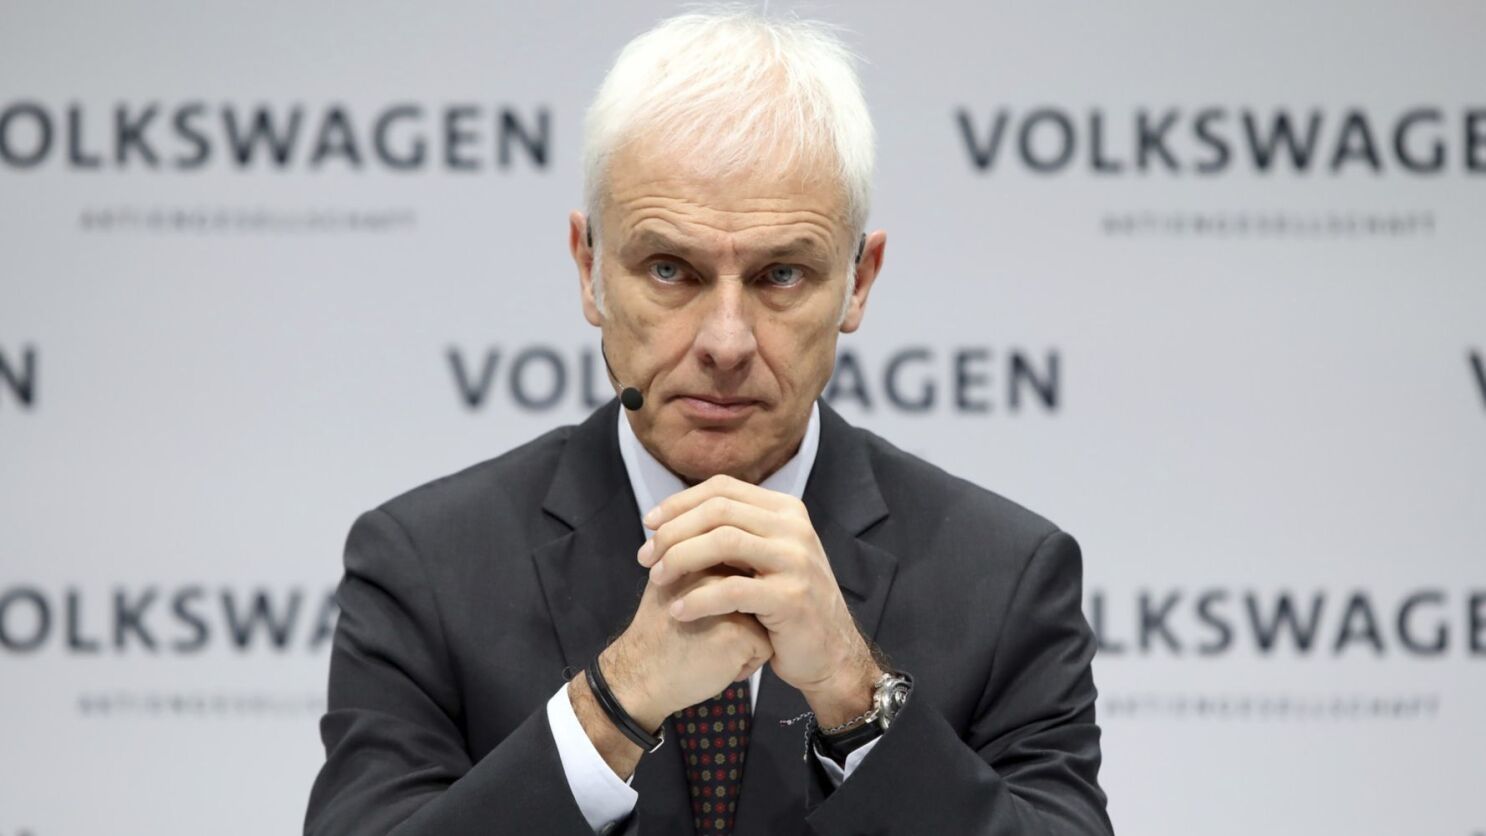 Hãng xe hàng đầu châu Âu Volkswagen đã “rũ bùn hồi sinh” nhờ truyền thông nội bộ như thế nào? - Ảnh 1